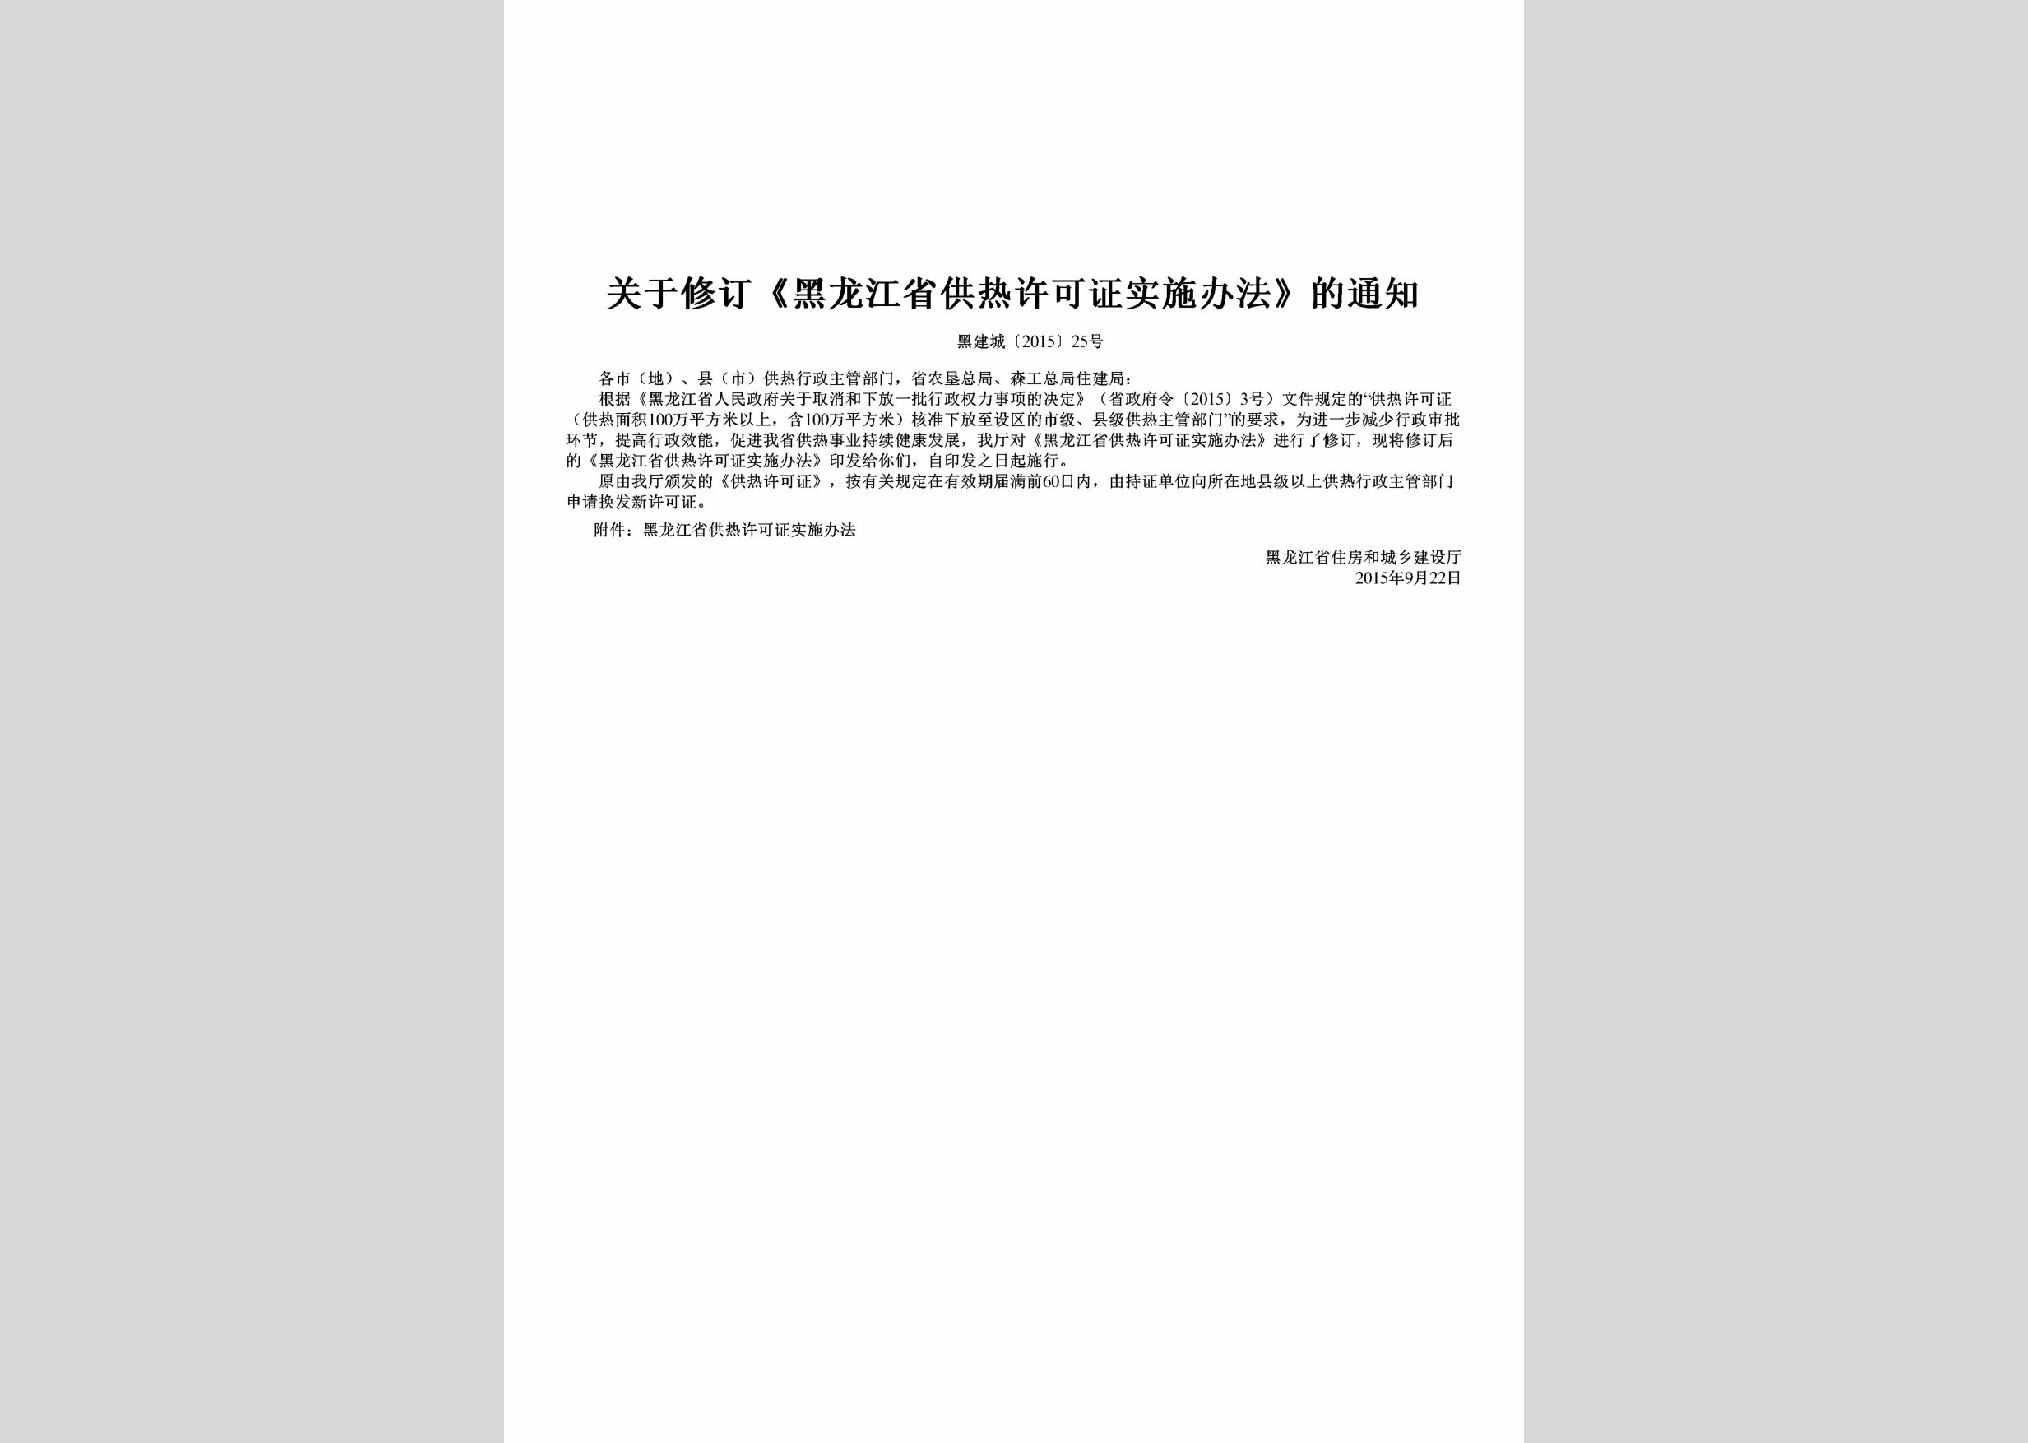 黑建城[2015]25号：关于修订《黑龙江省供热许可证实施办法》的通知